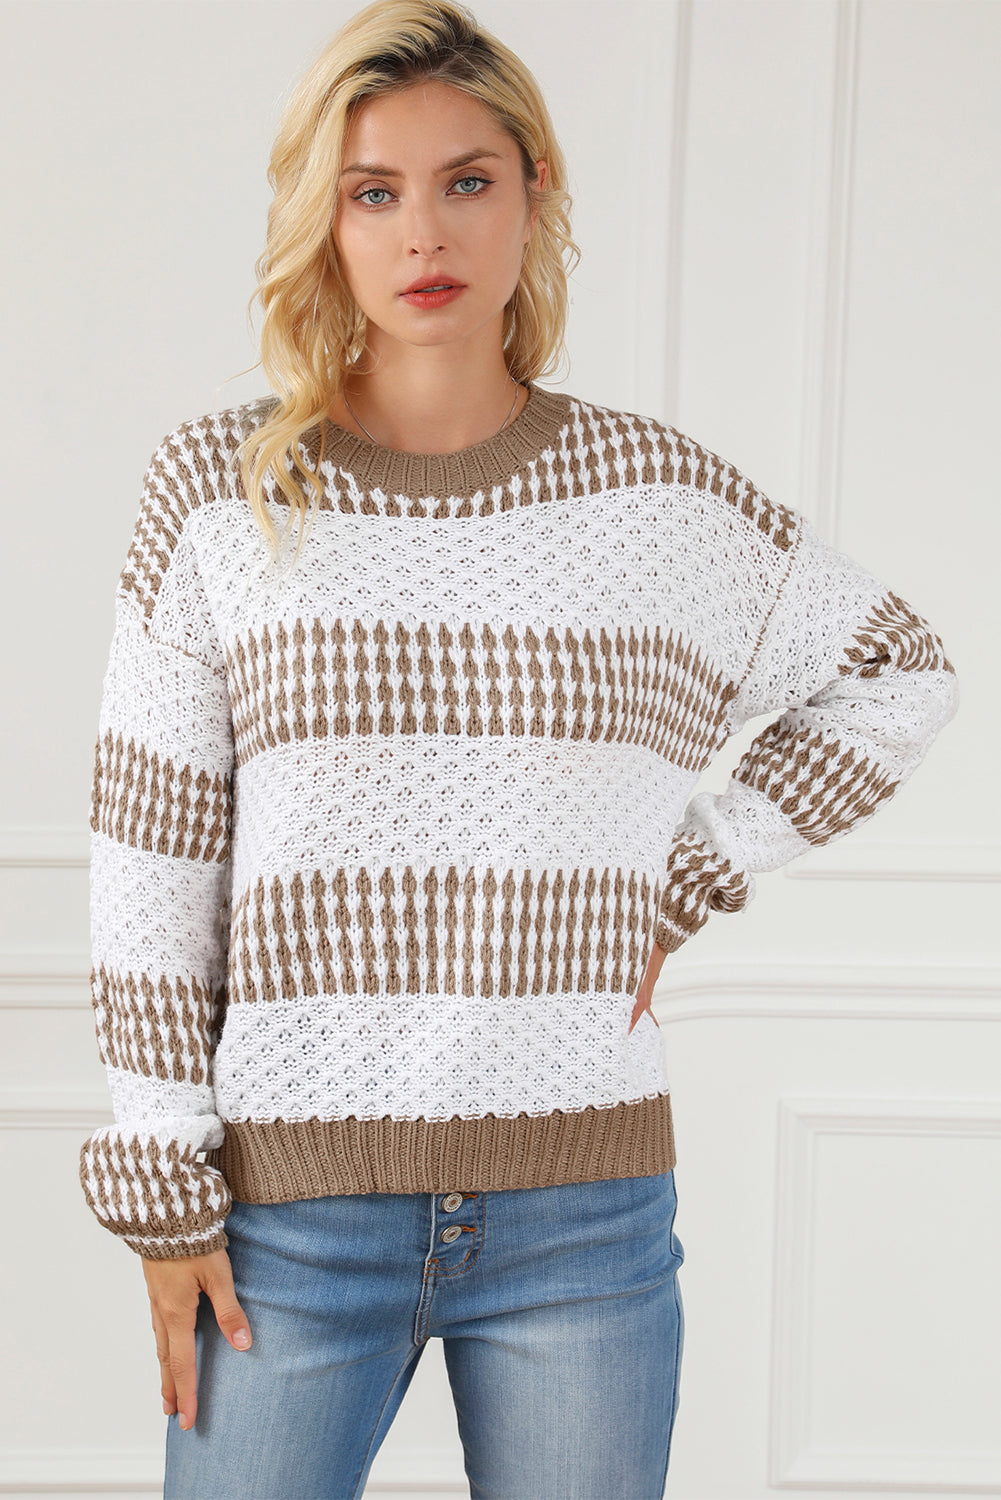 Multicolour Vertical Stripes Two Tones Drop Shoulder Sweater